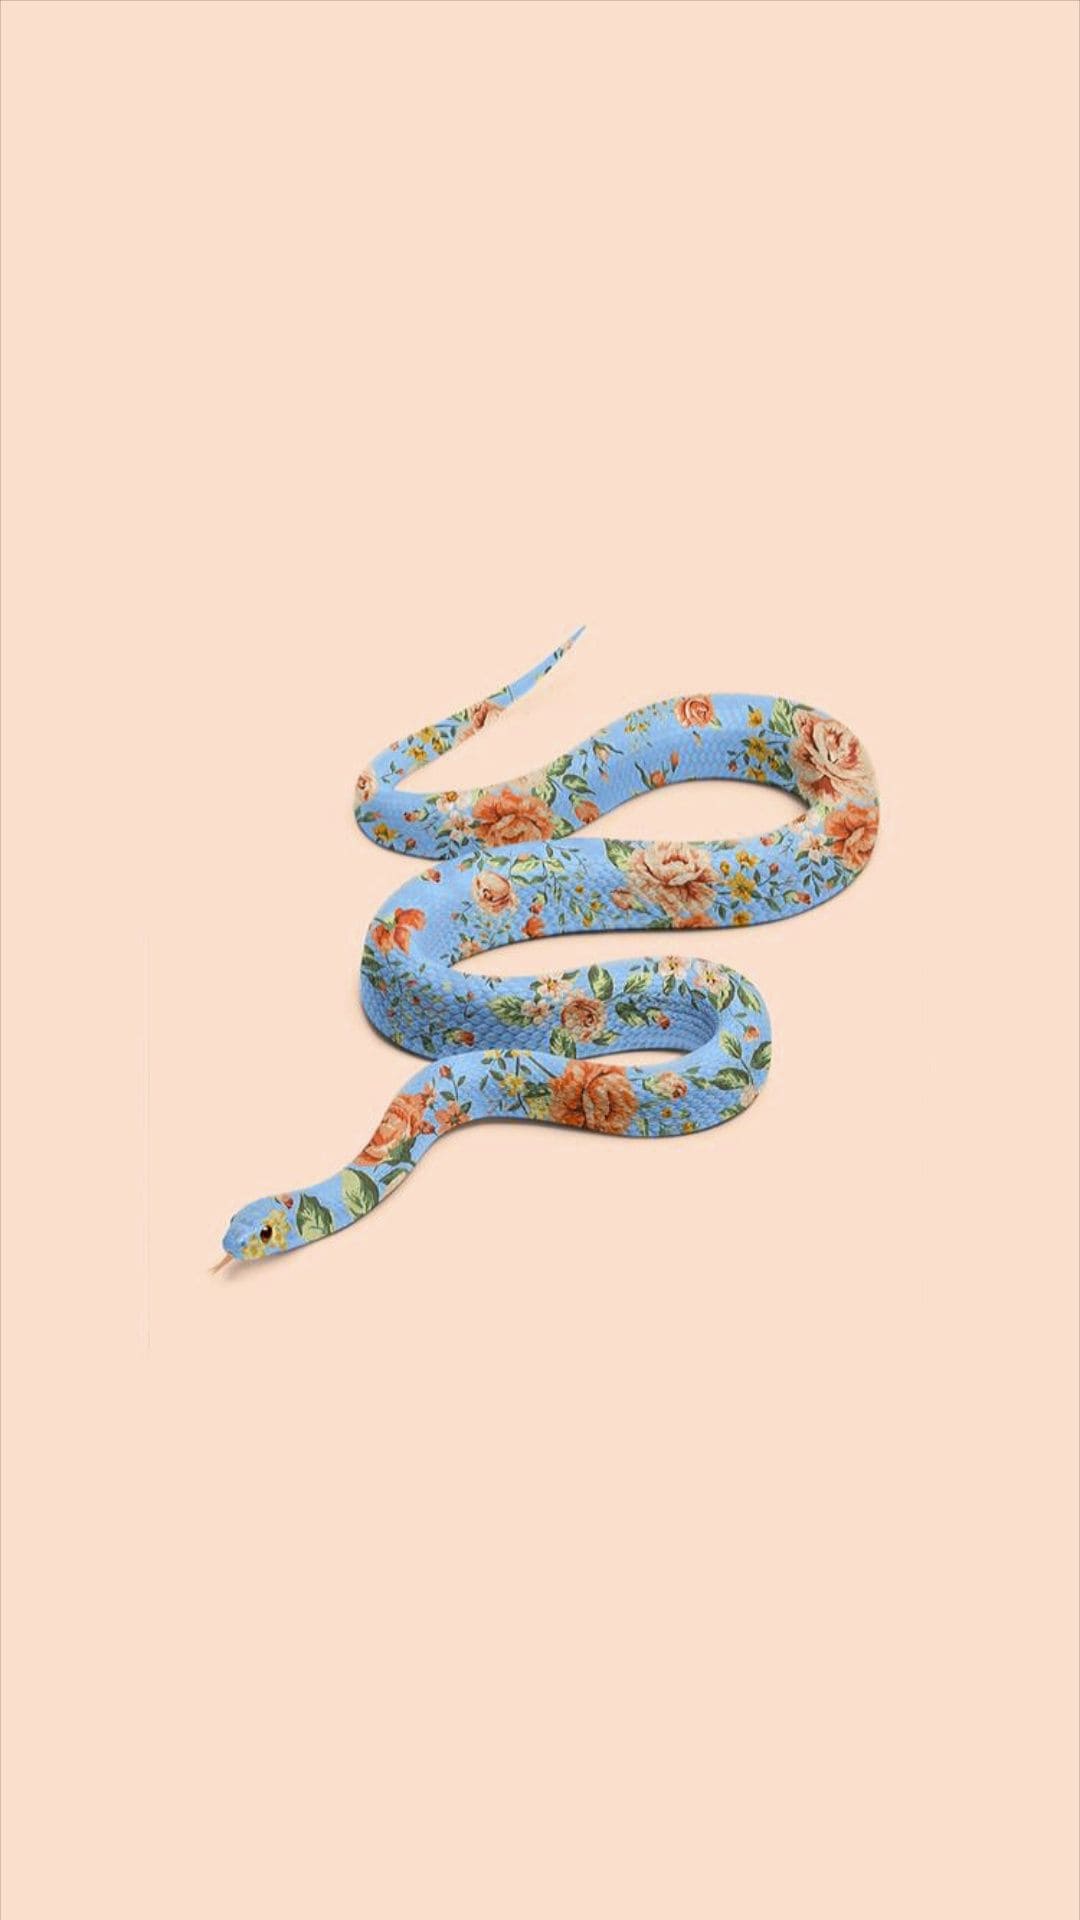 22 Snakes ideas  snake wallpaper snake art pretty snakes